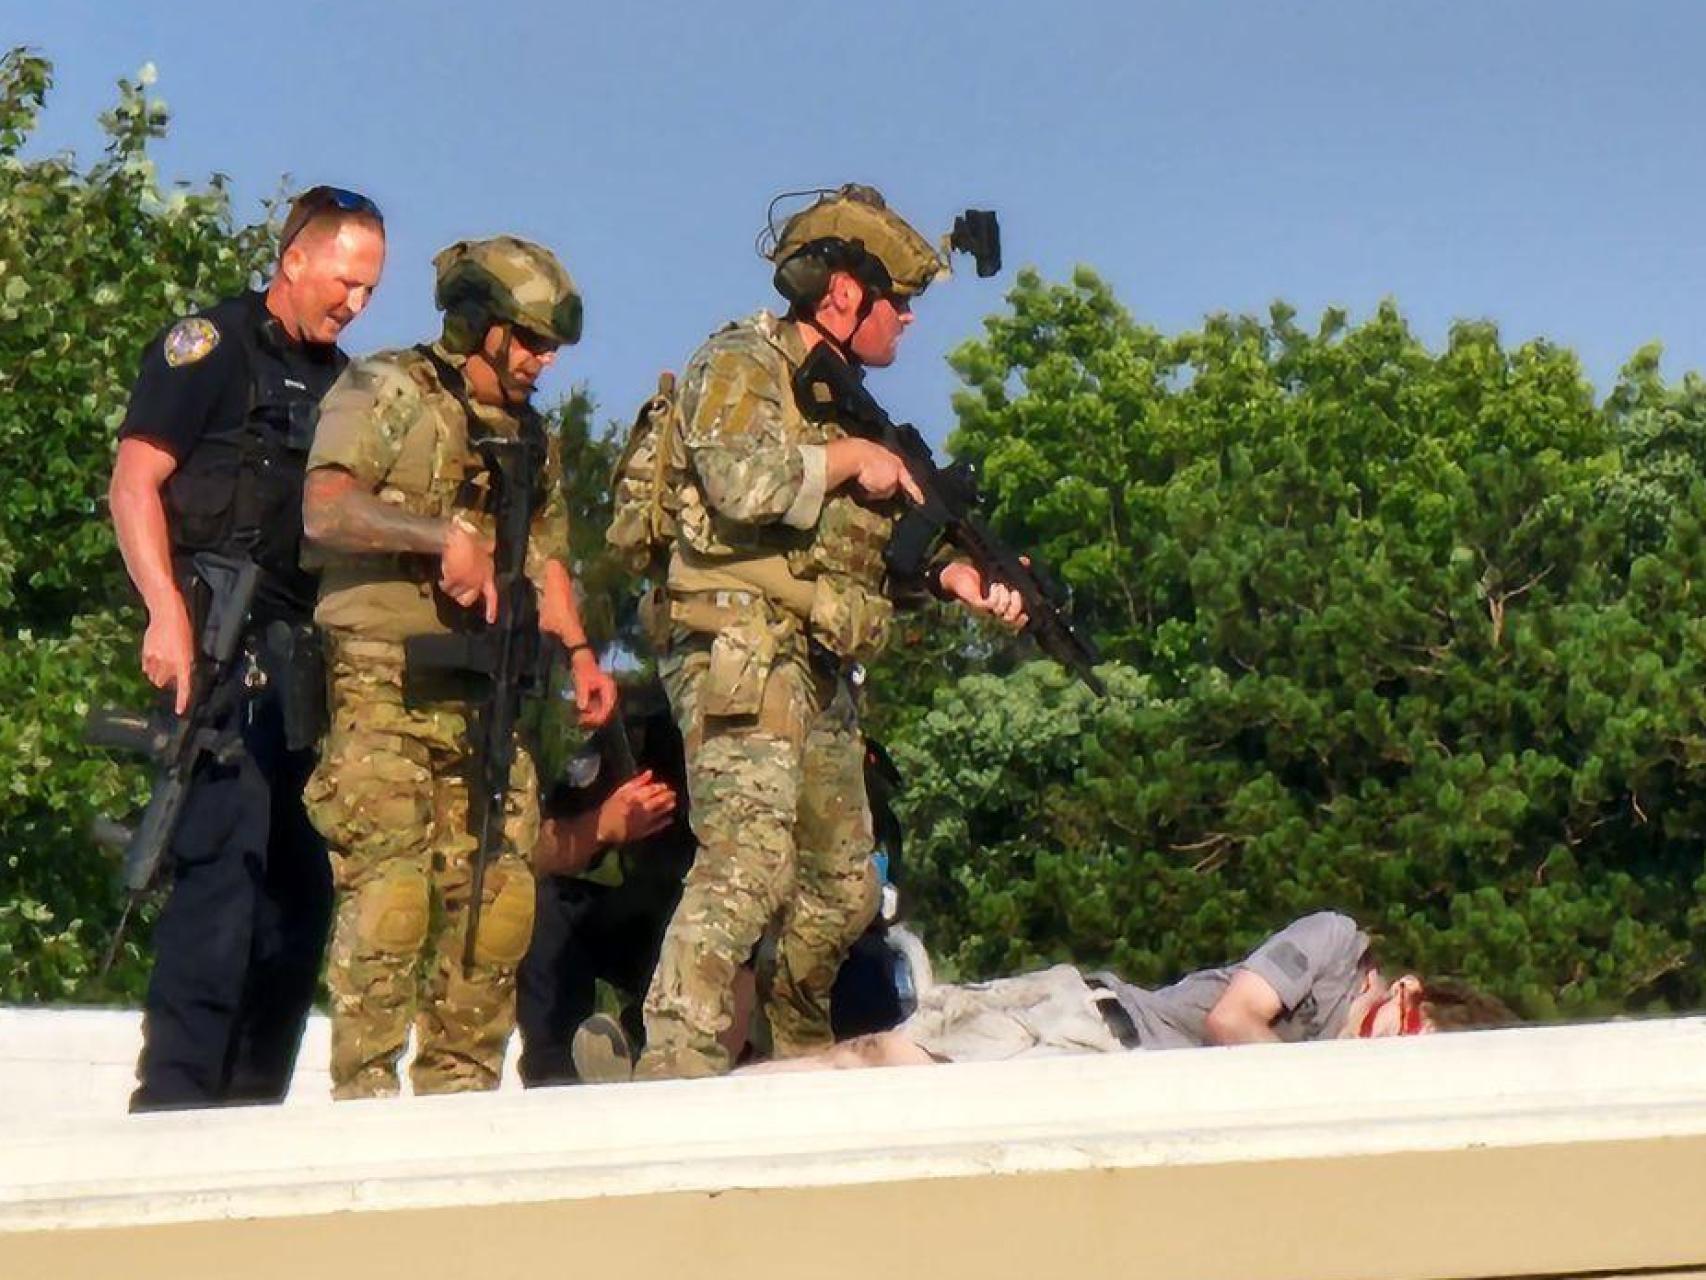 Fuerzas de seguridad llegan hasta el cadáver del tirador.